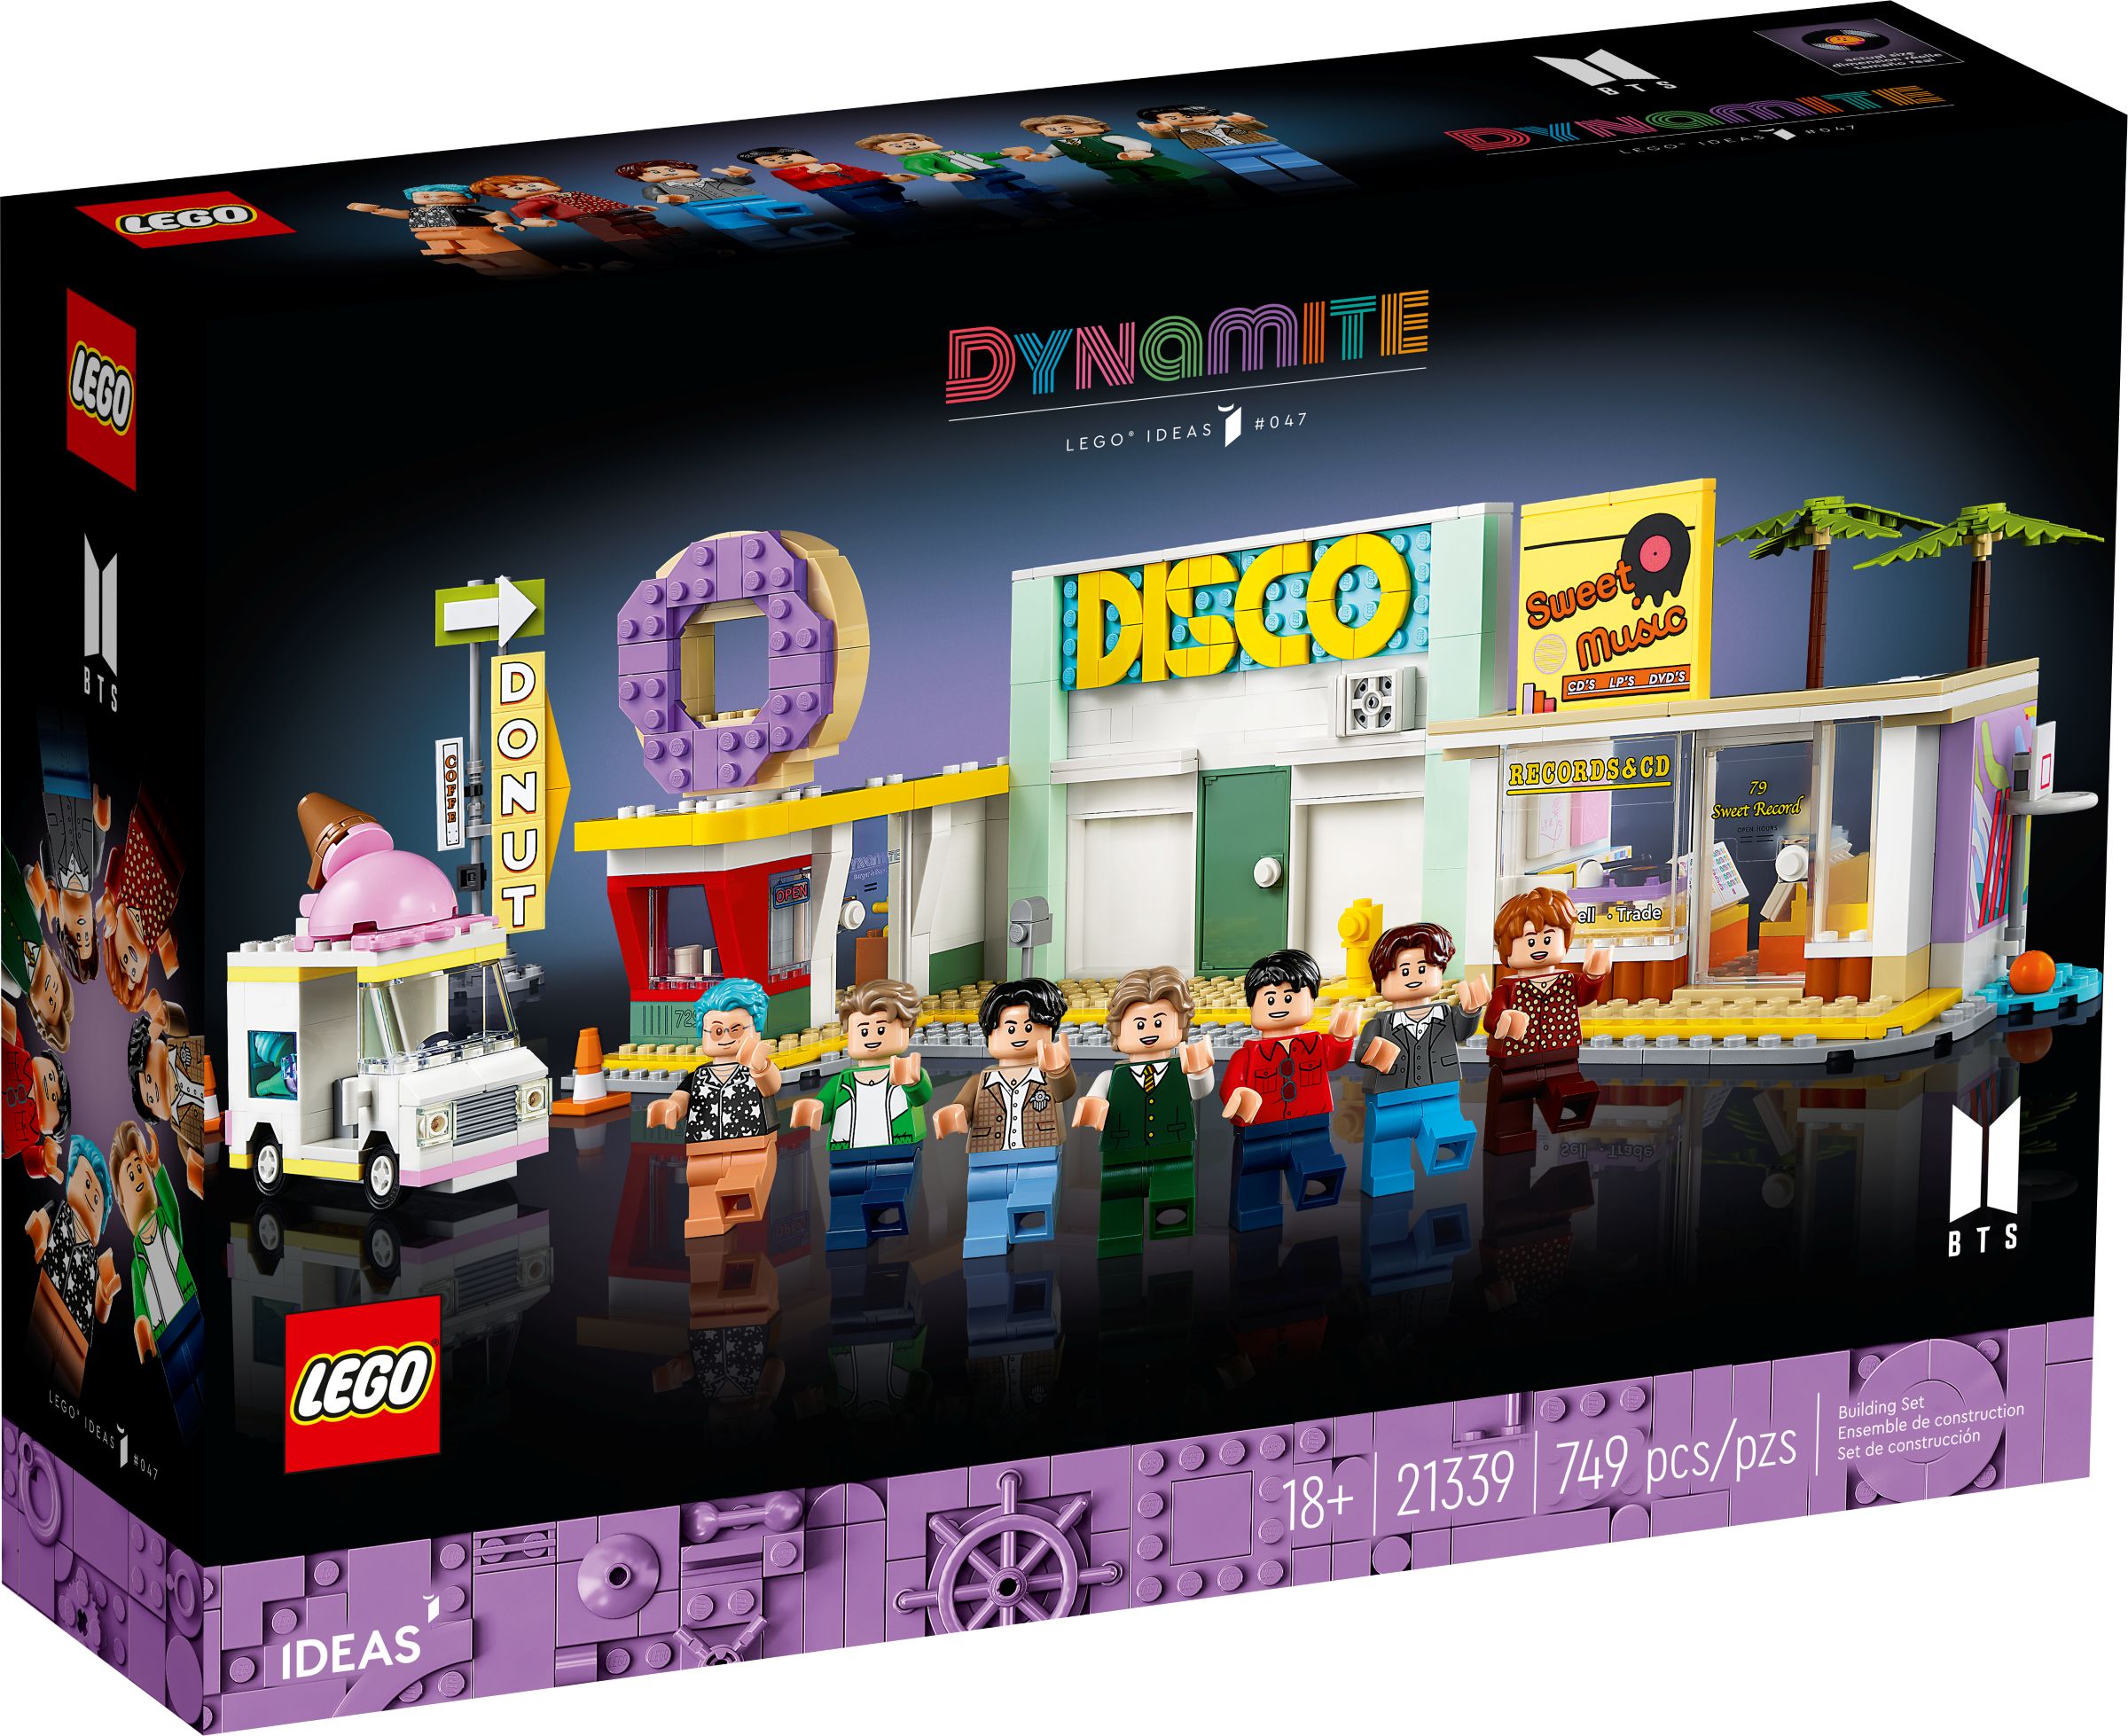 LEGO Ideas 21339 BTS Dynamite LEGO_21339_alt1.jpg